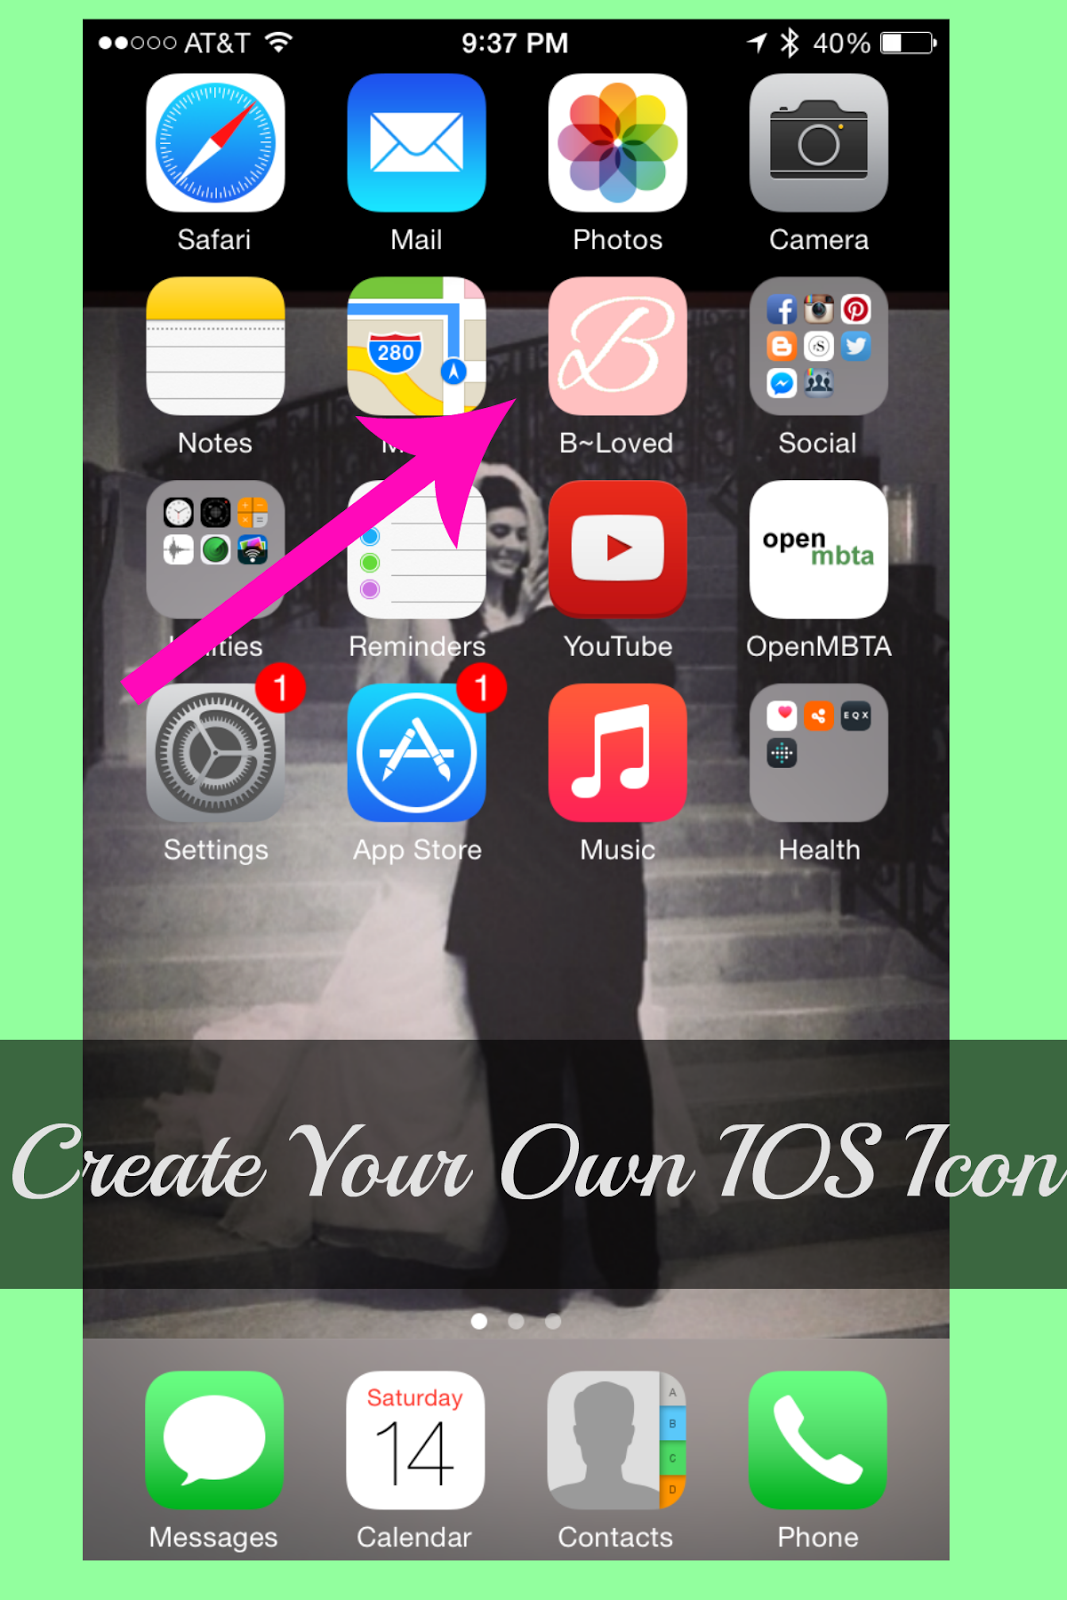 How To: Create A Custom IOS Blog Icon